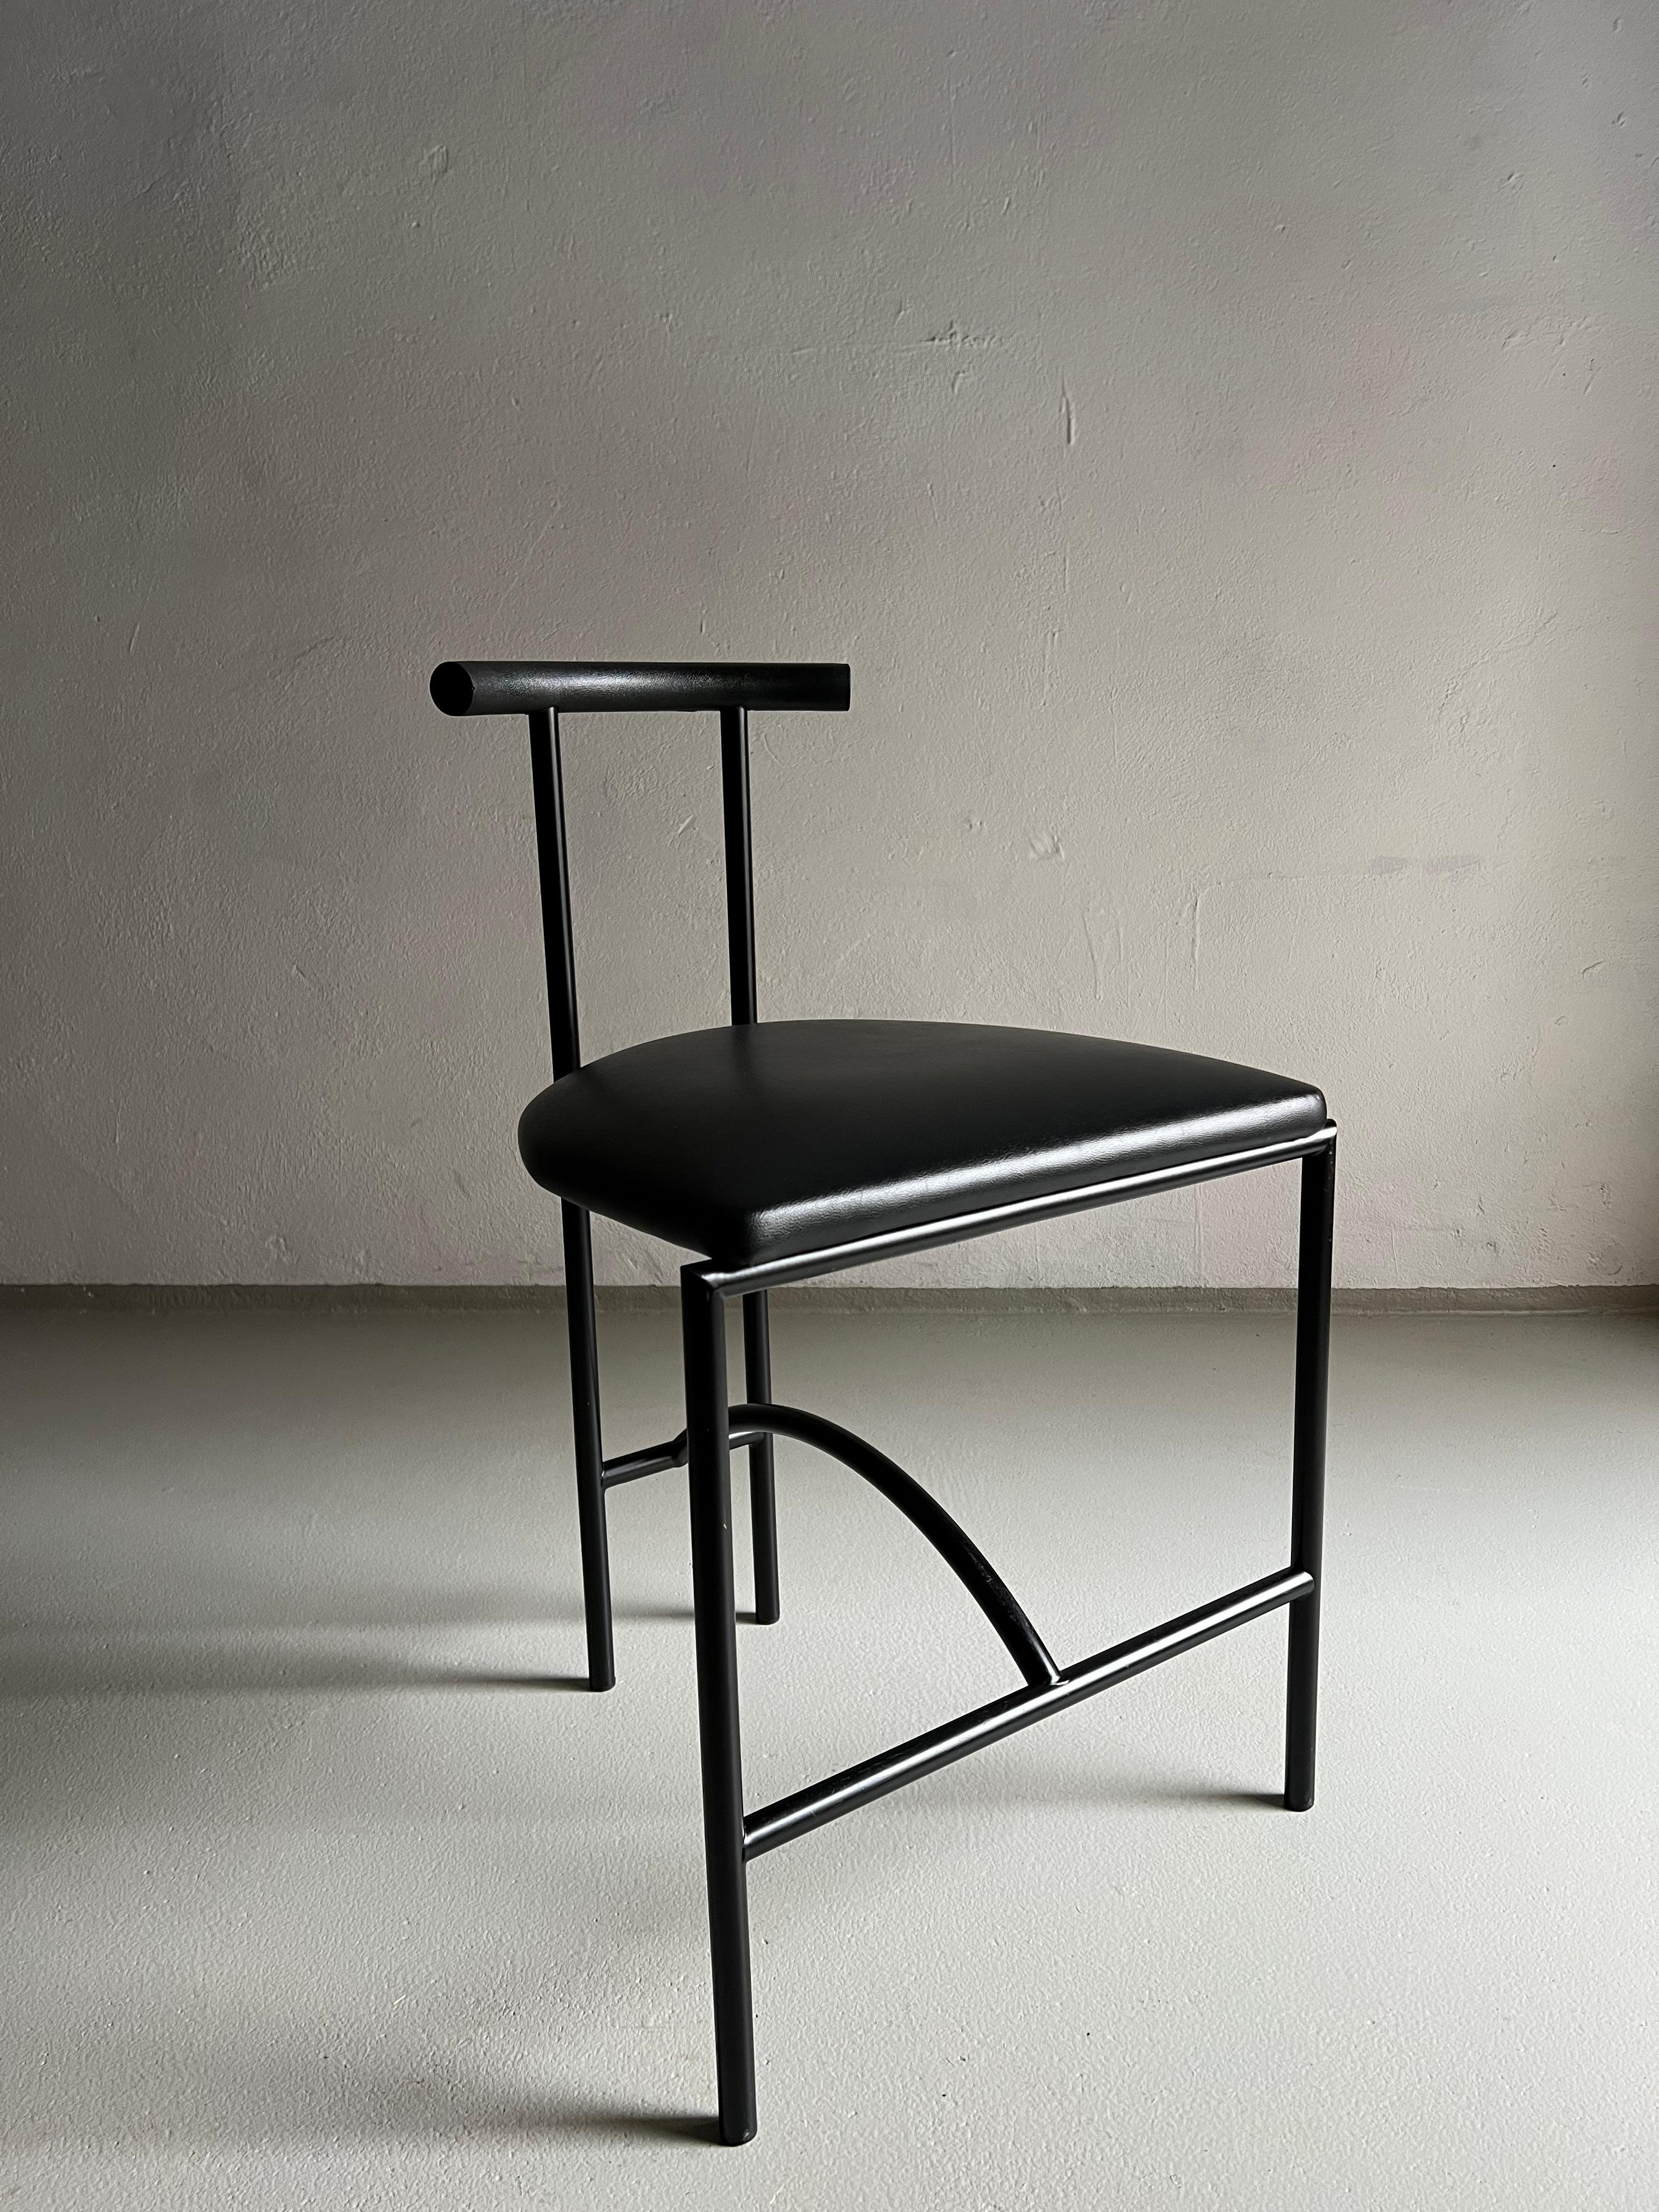 Set aus 4 schwarzen Metallstühlen mit hochwertiger Kunstlederpolsterung und weicher Rückenlehne. Schwer und stabil.

